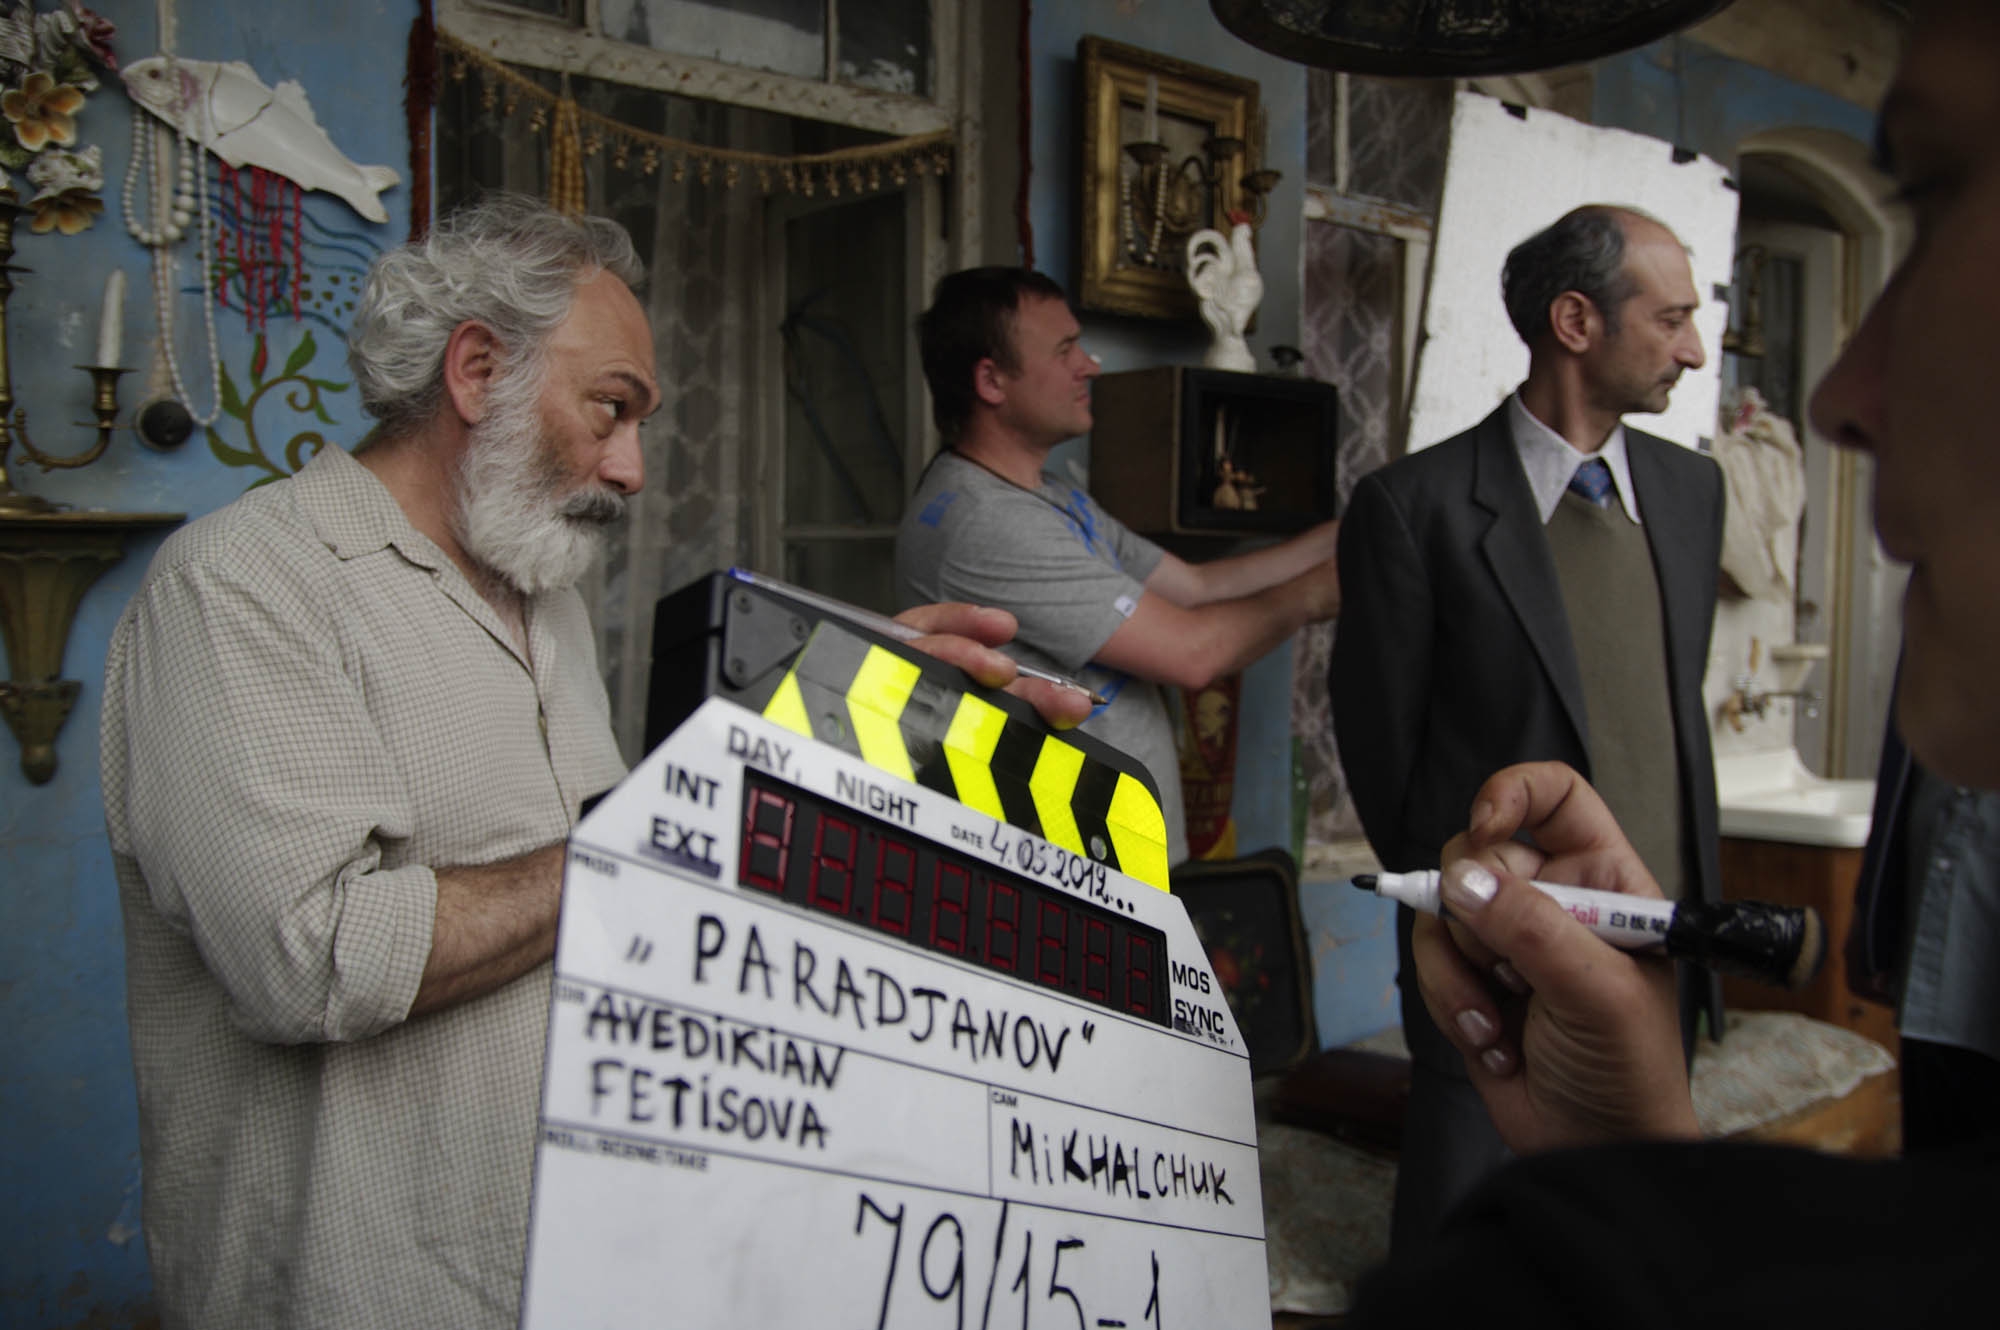 Фильм о Параджанове рассматривается для участия в международном кинофестивале в 
Локарно